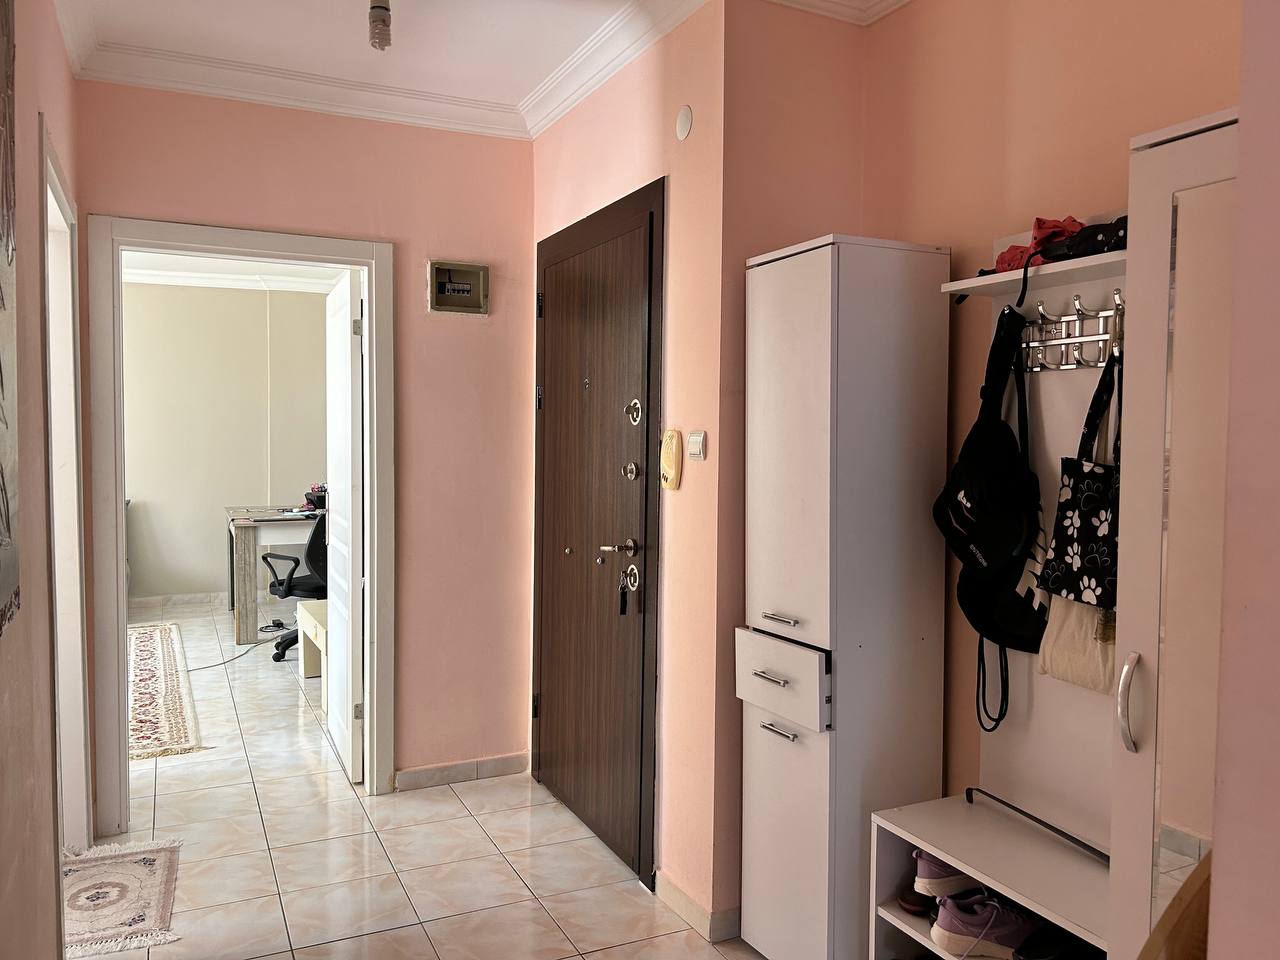 Квартира планировкой 2+1  с отдельной кухней в районе Махмутлар  - Фото 5